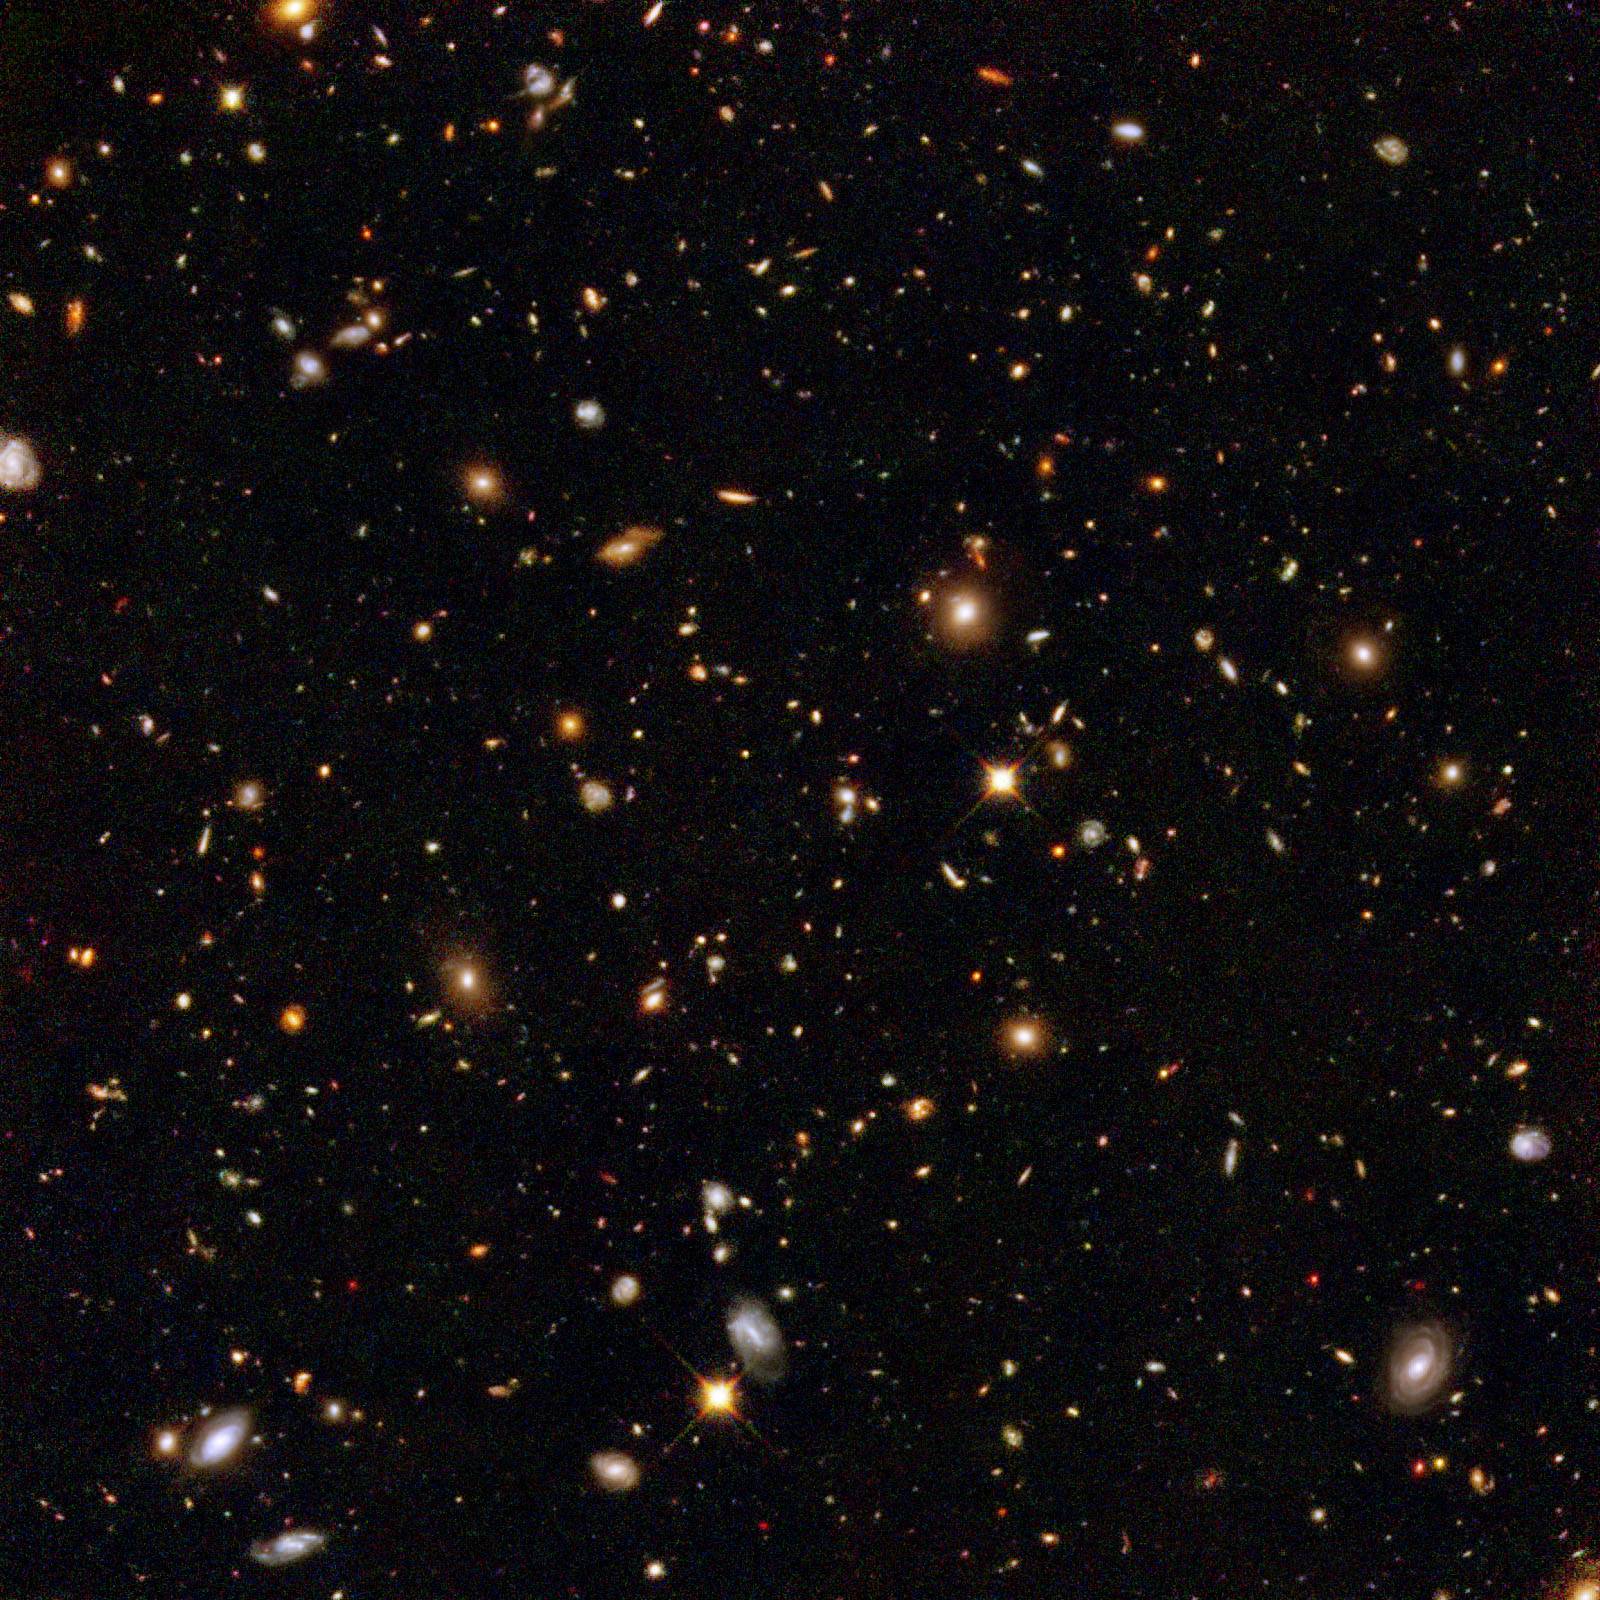 Hubble Ultra Deep Field, The Free Encyclopedia